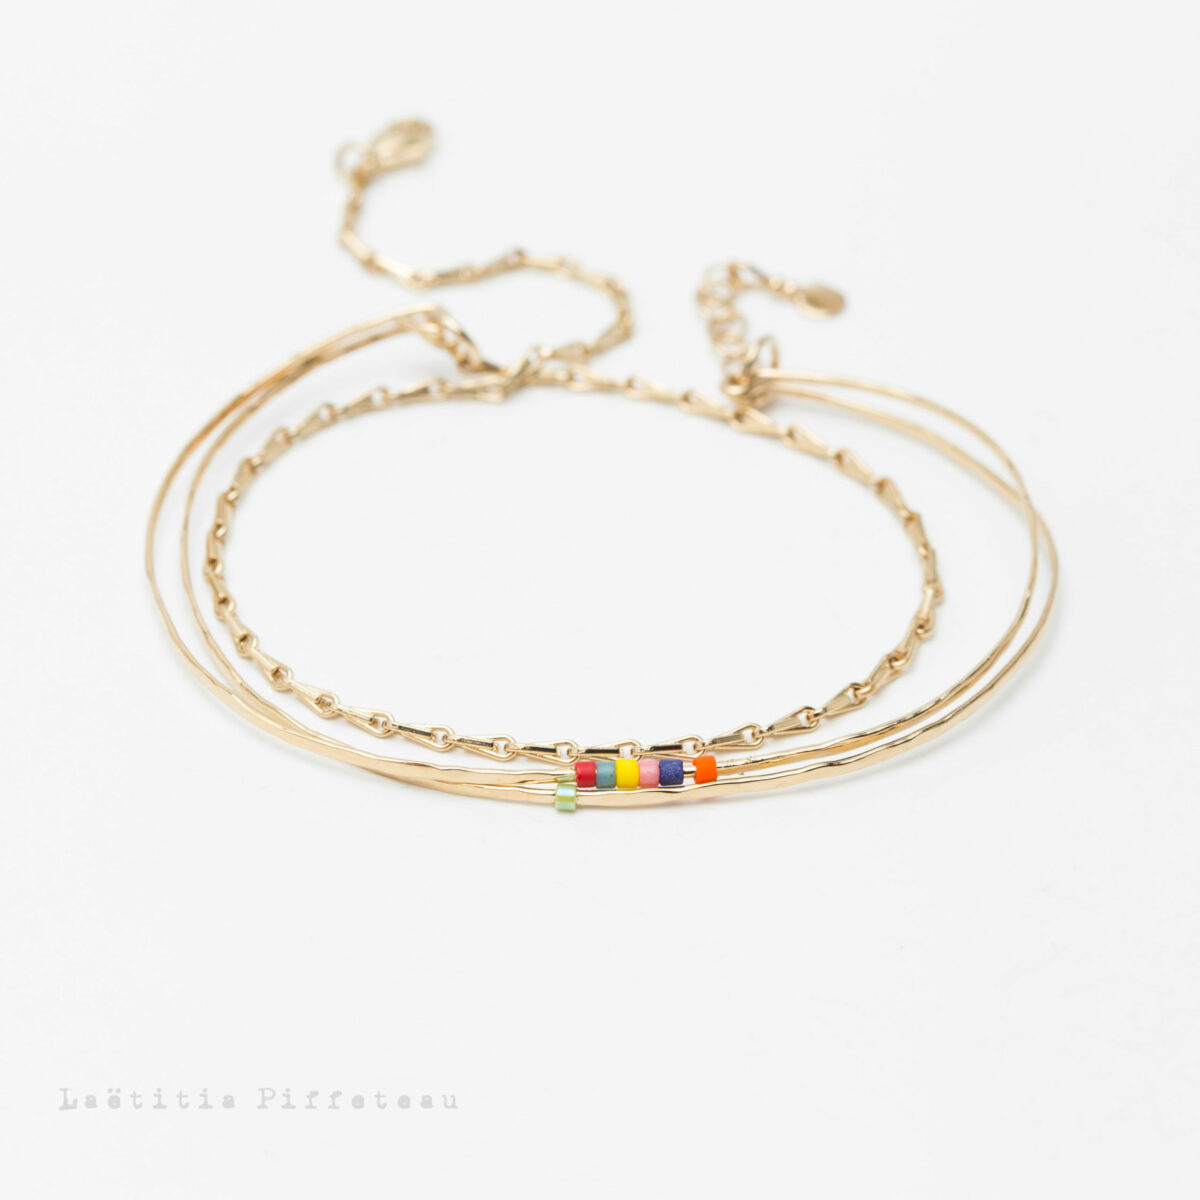 Bracelet Trio or Acidulé 2 joncs fins martelés perles multicolores prolongés d'une chaine épis Laëtitia Piffeteau